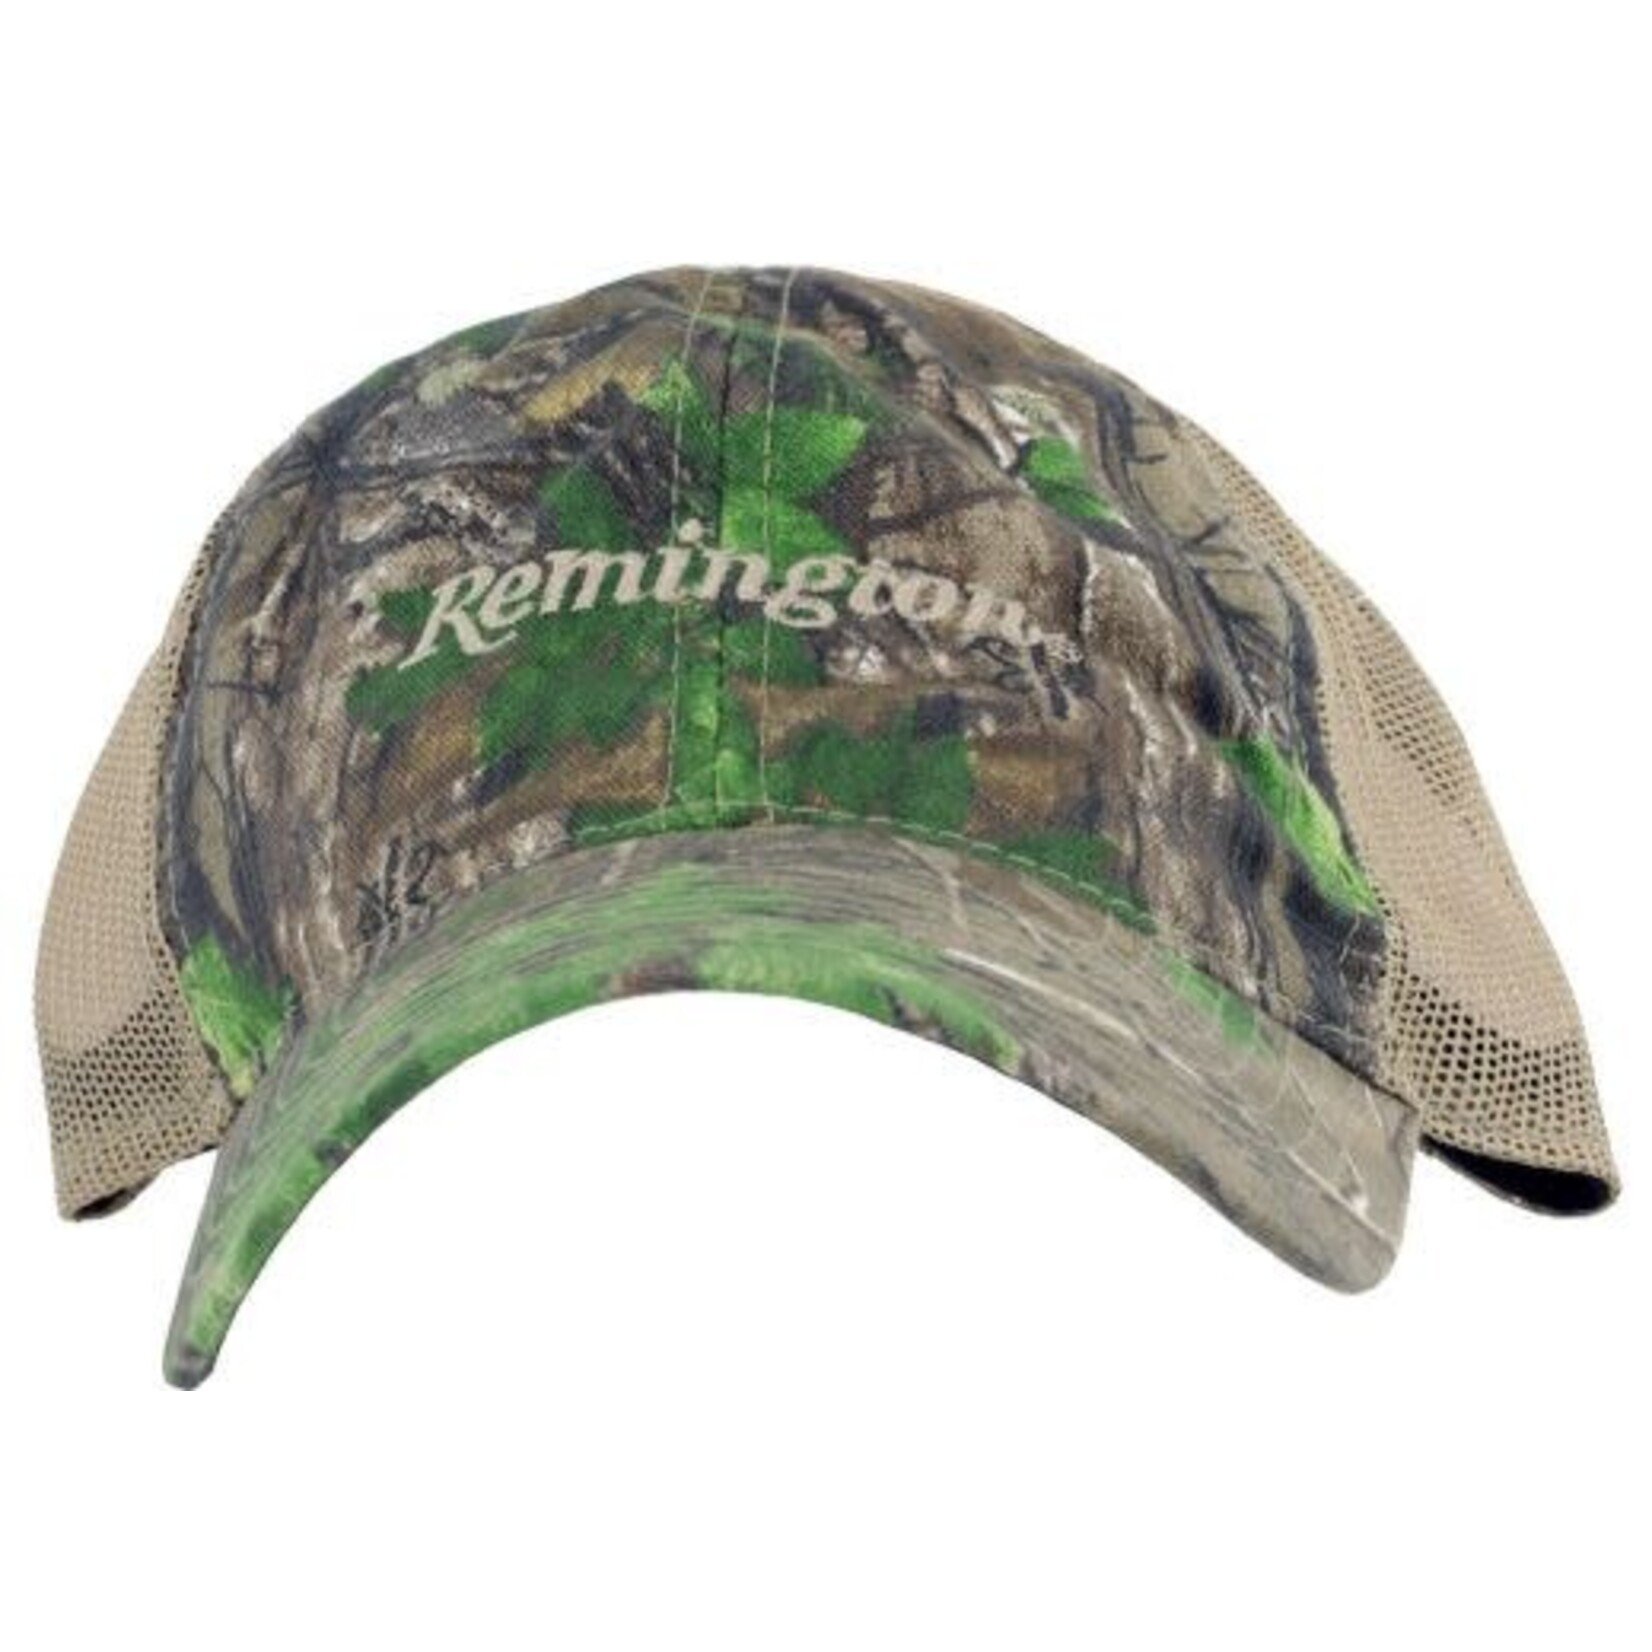 Remington REMINGTON BALL CAP LOGO REALTREE XTRA GREEN CAMO